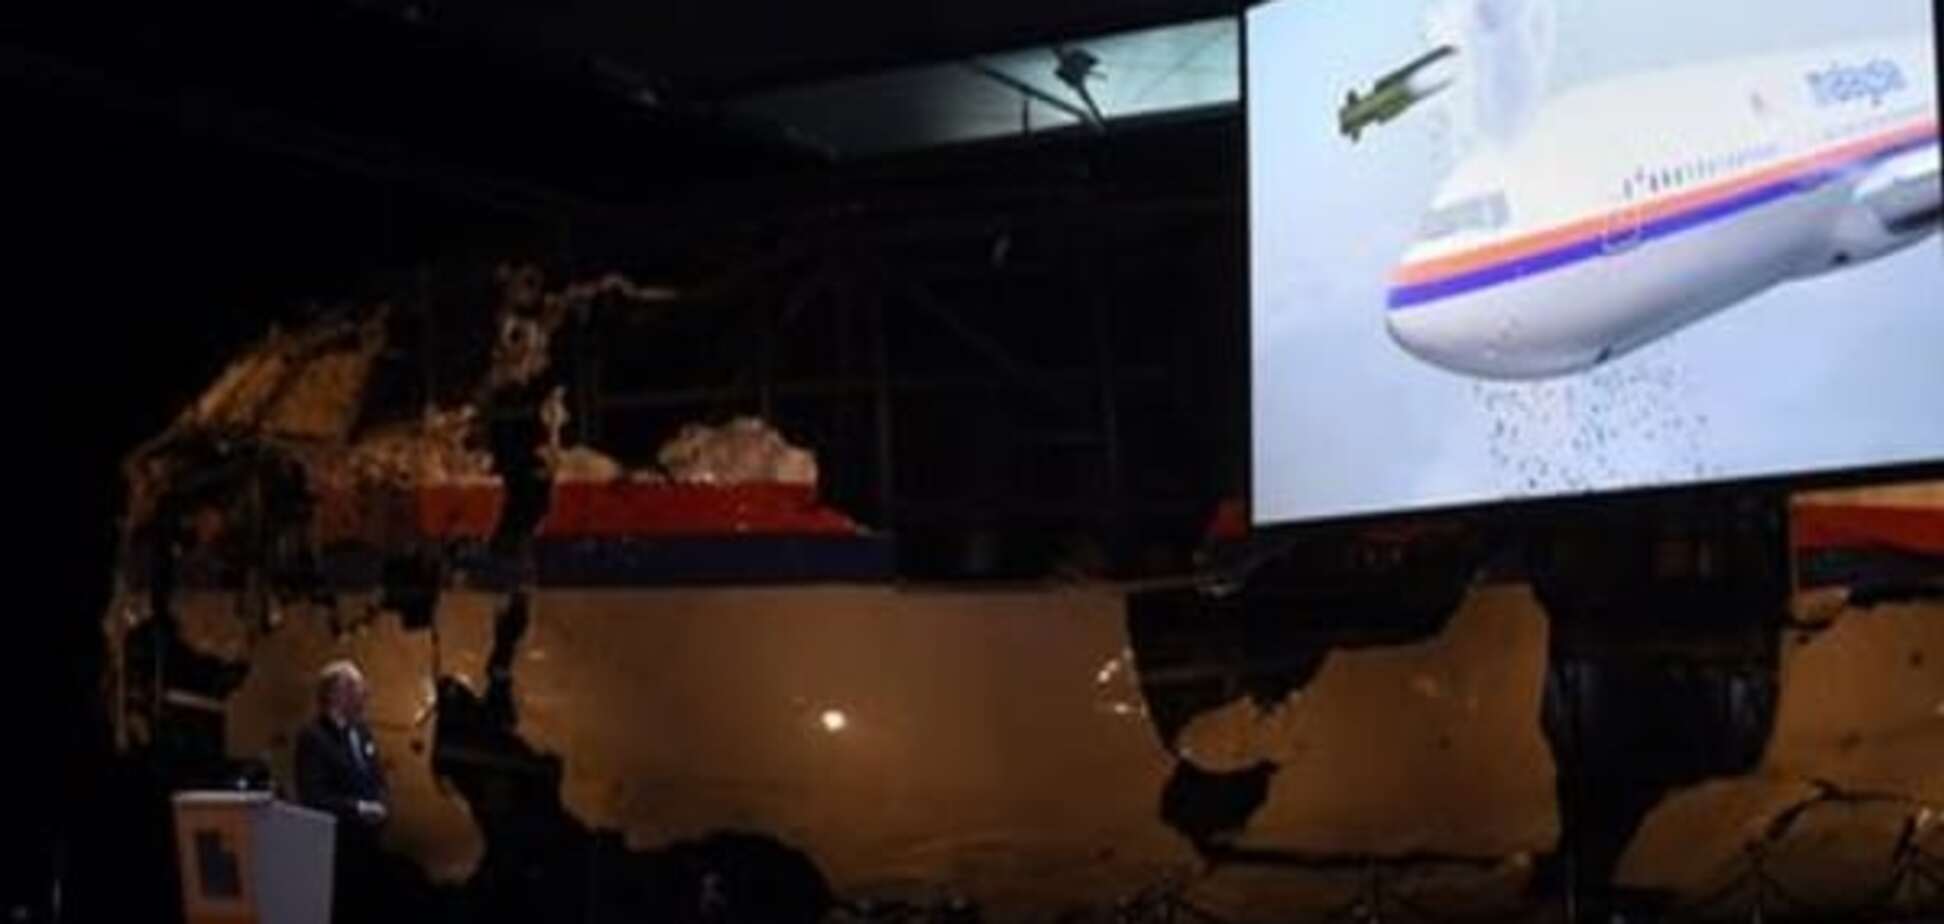 Експерт з Нідерландів: Ракету по MH17 випустили з підконтрольної сепаратистам території